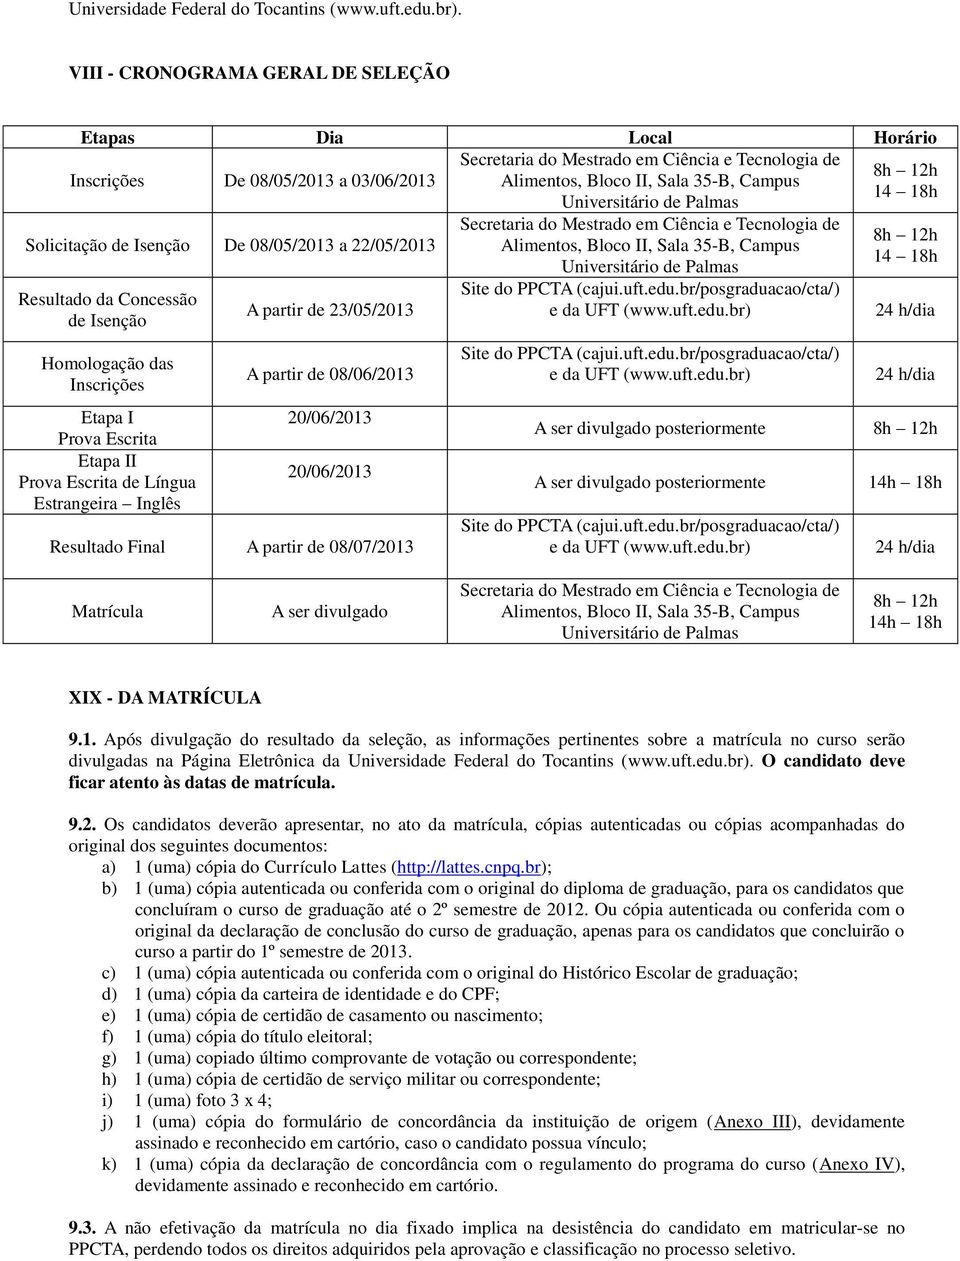 18h Universitário de Palmas Solicitação de Isenção De 08/05/2013 a 22/05/2013 Resultado da Concessão de Isenção Homologação das Inscrições Etapa I Prova Escrita Etapa II Prova Escrita de Língua